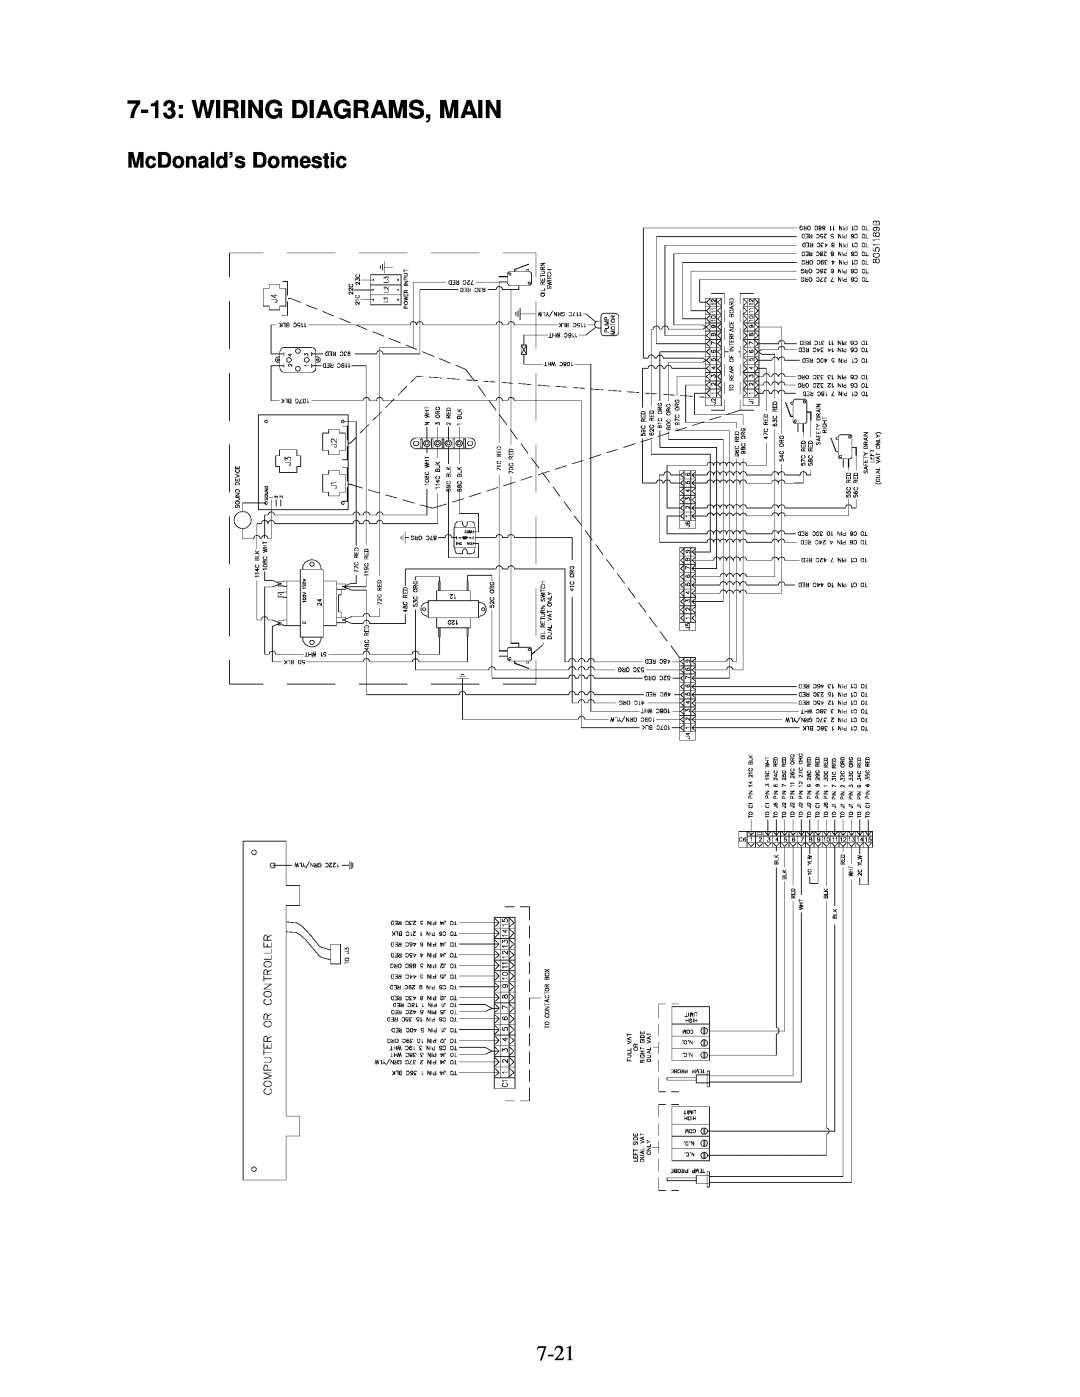 Frymaster H14 Series service manual Wiring Diagrams, Main, McDonald’s Domestic 